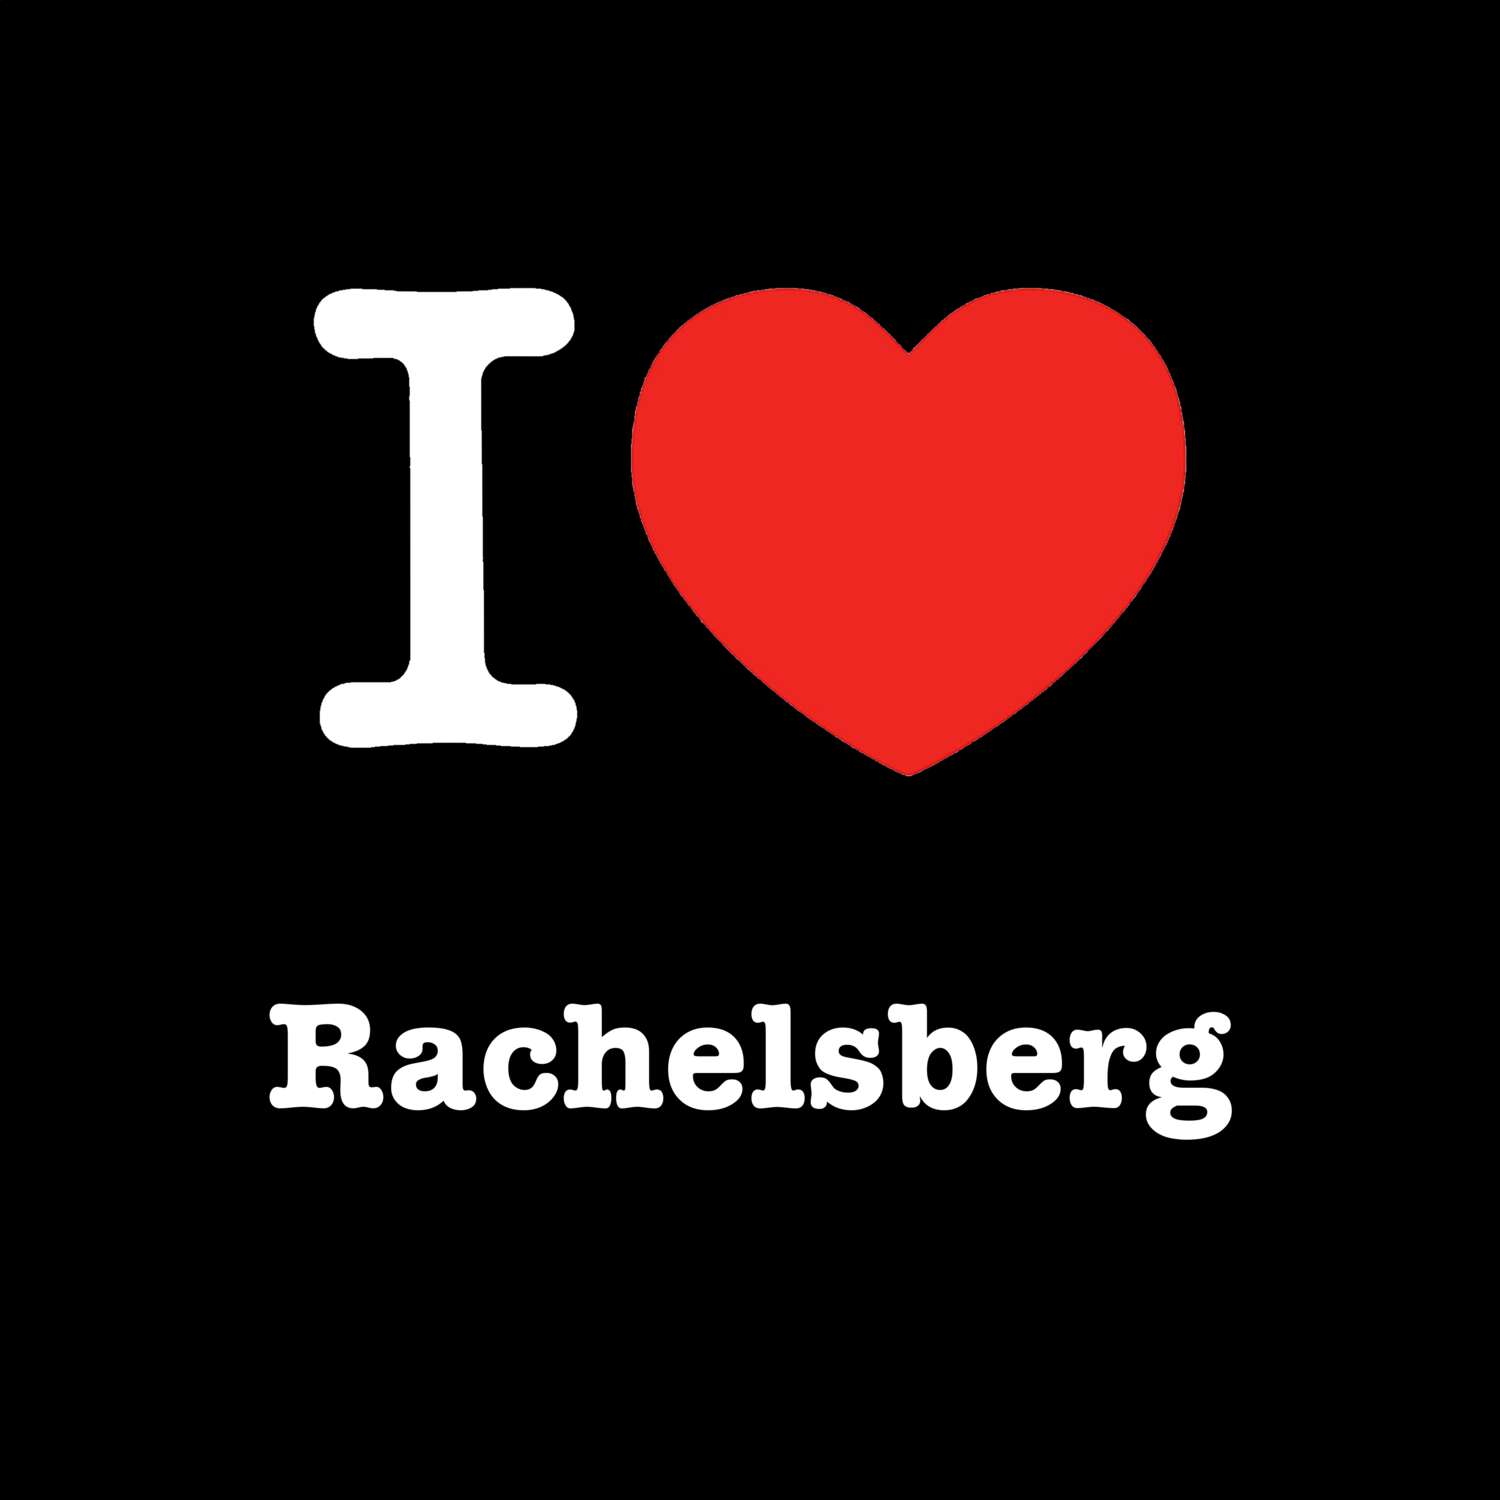 Rachelsberg T-Shirt »I love«